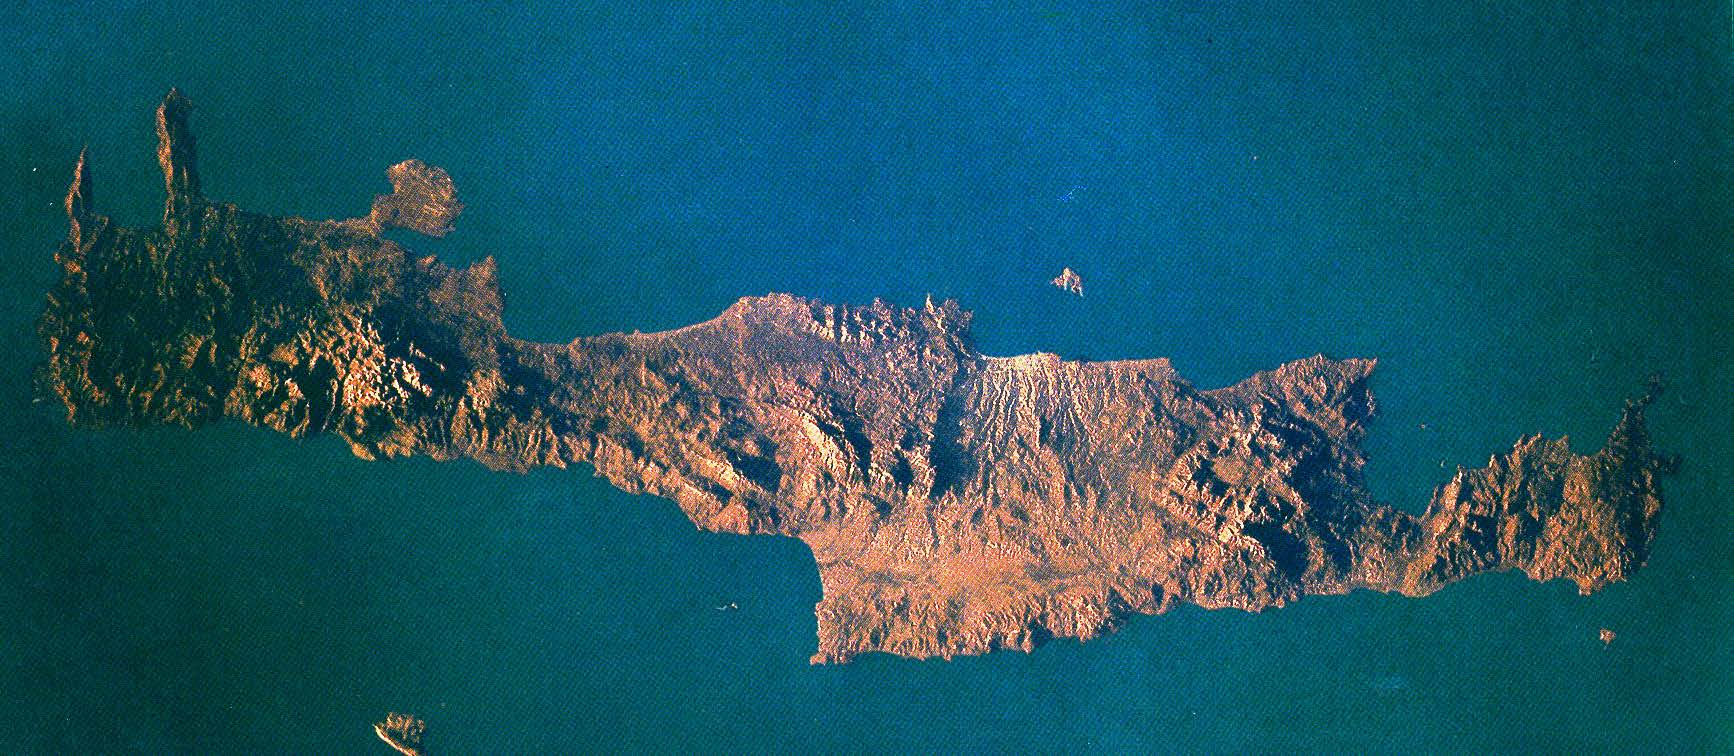 Κρήτη: Ανακτορικές περίοδοι (1900-1450 π.χ.) Περ. 1900 π.χ. ίδρυση πρώτων ανακτόρων.